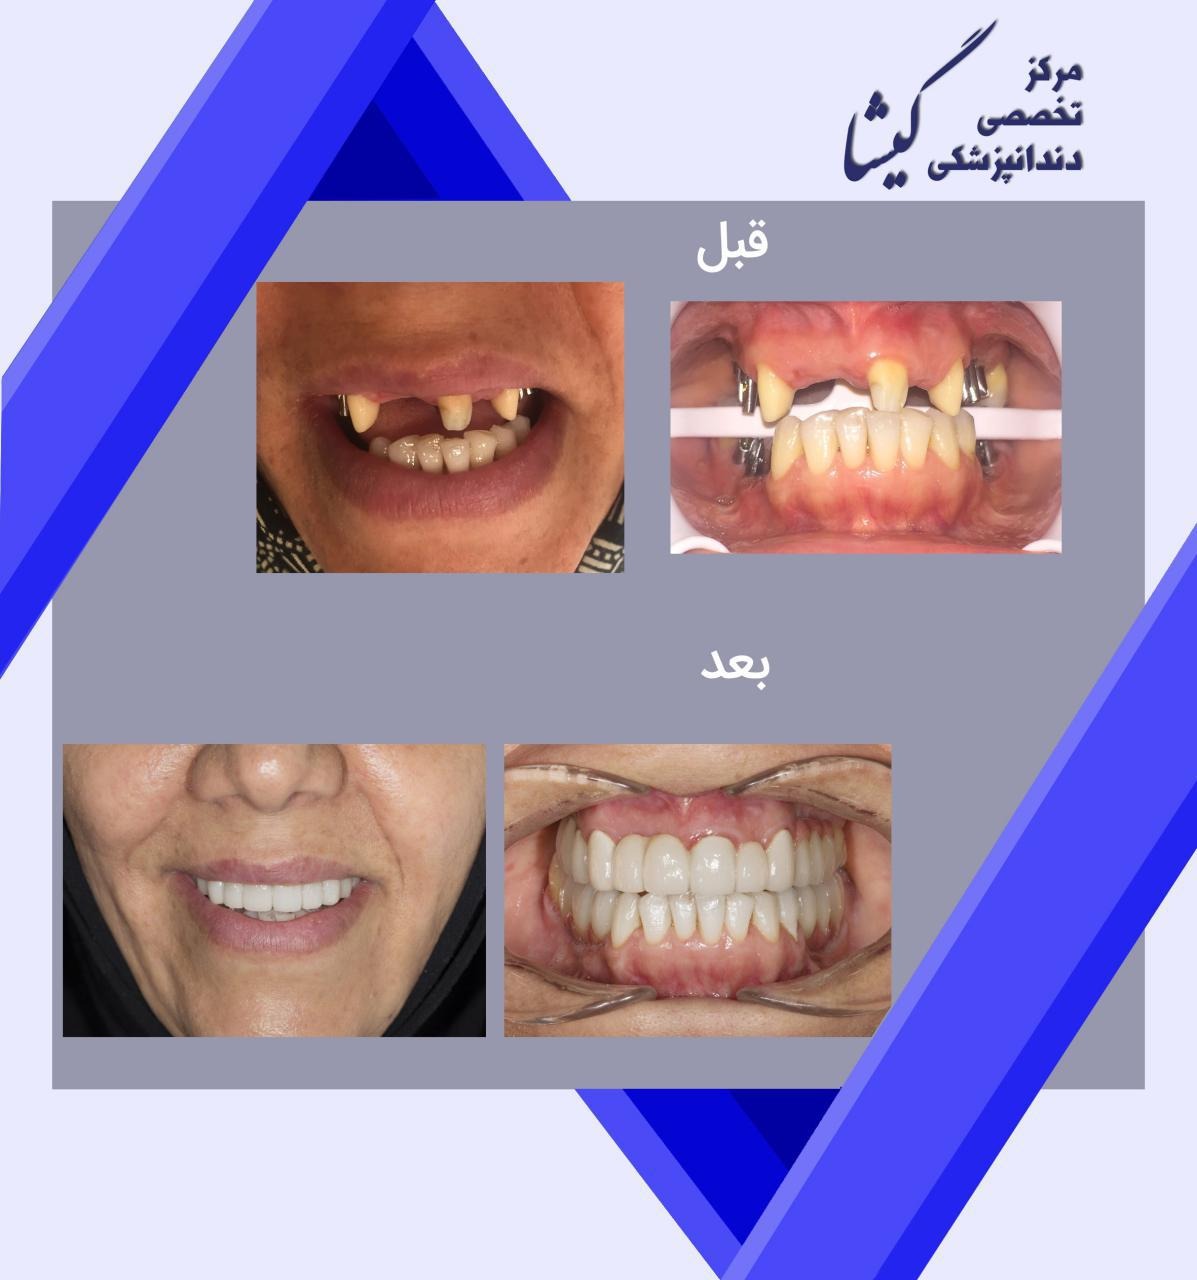 بازسازی دندانهای بیمار عزیزمان با ایمپلنت و روکش توسط دکتر عزیز گشاده رو (متخصص ایمپلنت و پروتزهای دندانی در تهران